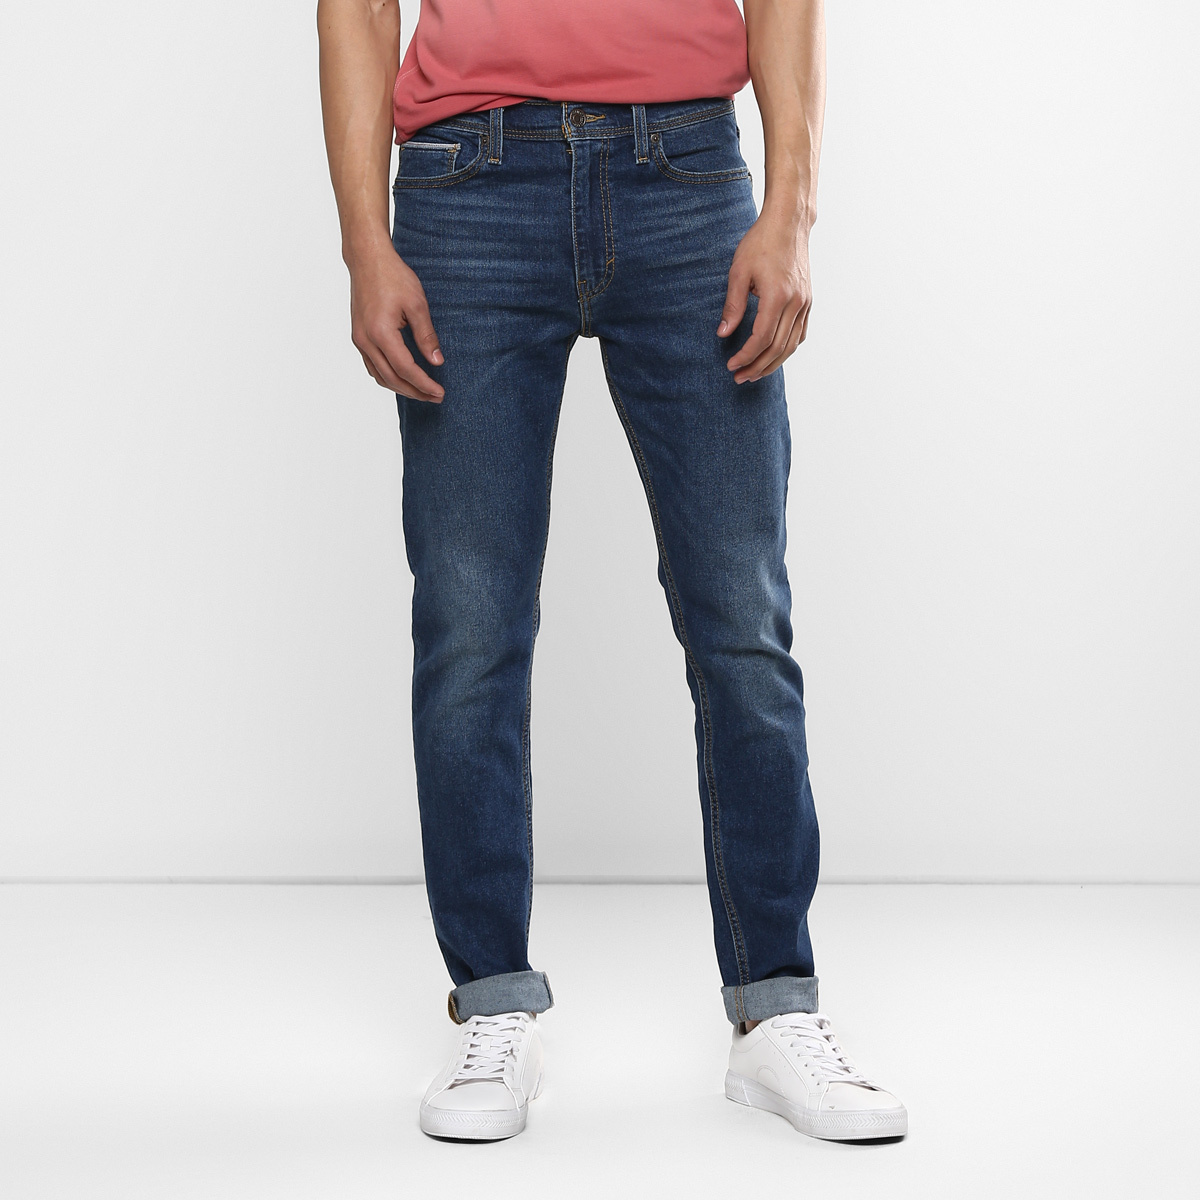 LEVIS MEN Single Length Jeans 86674-0001 Blue 30